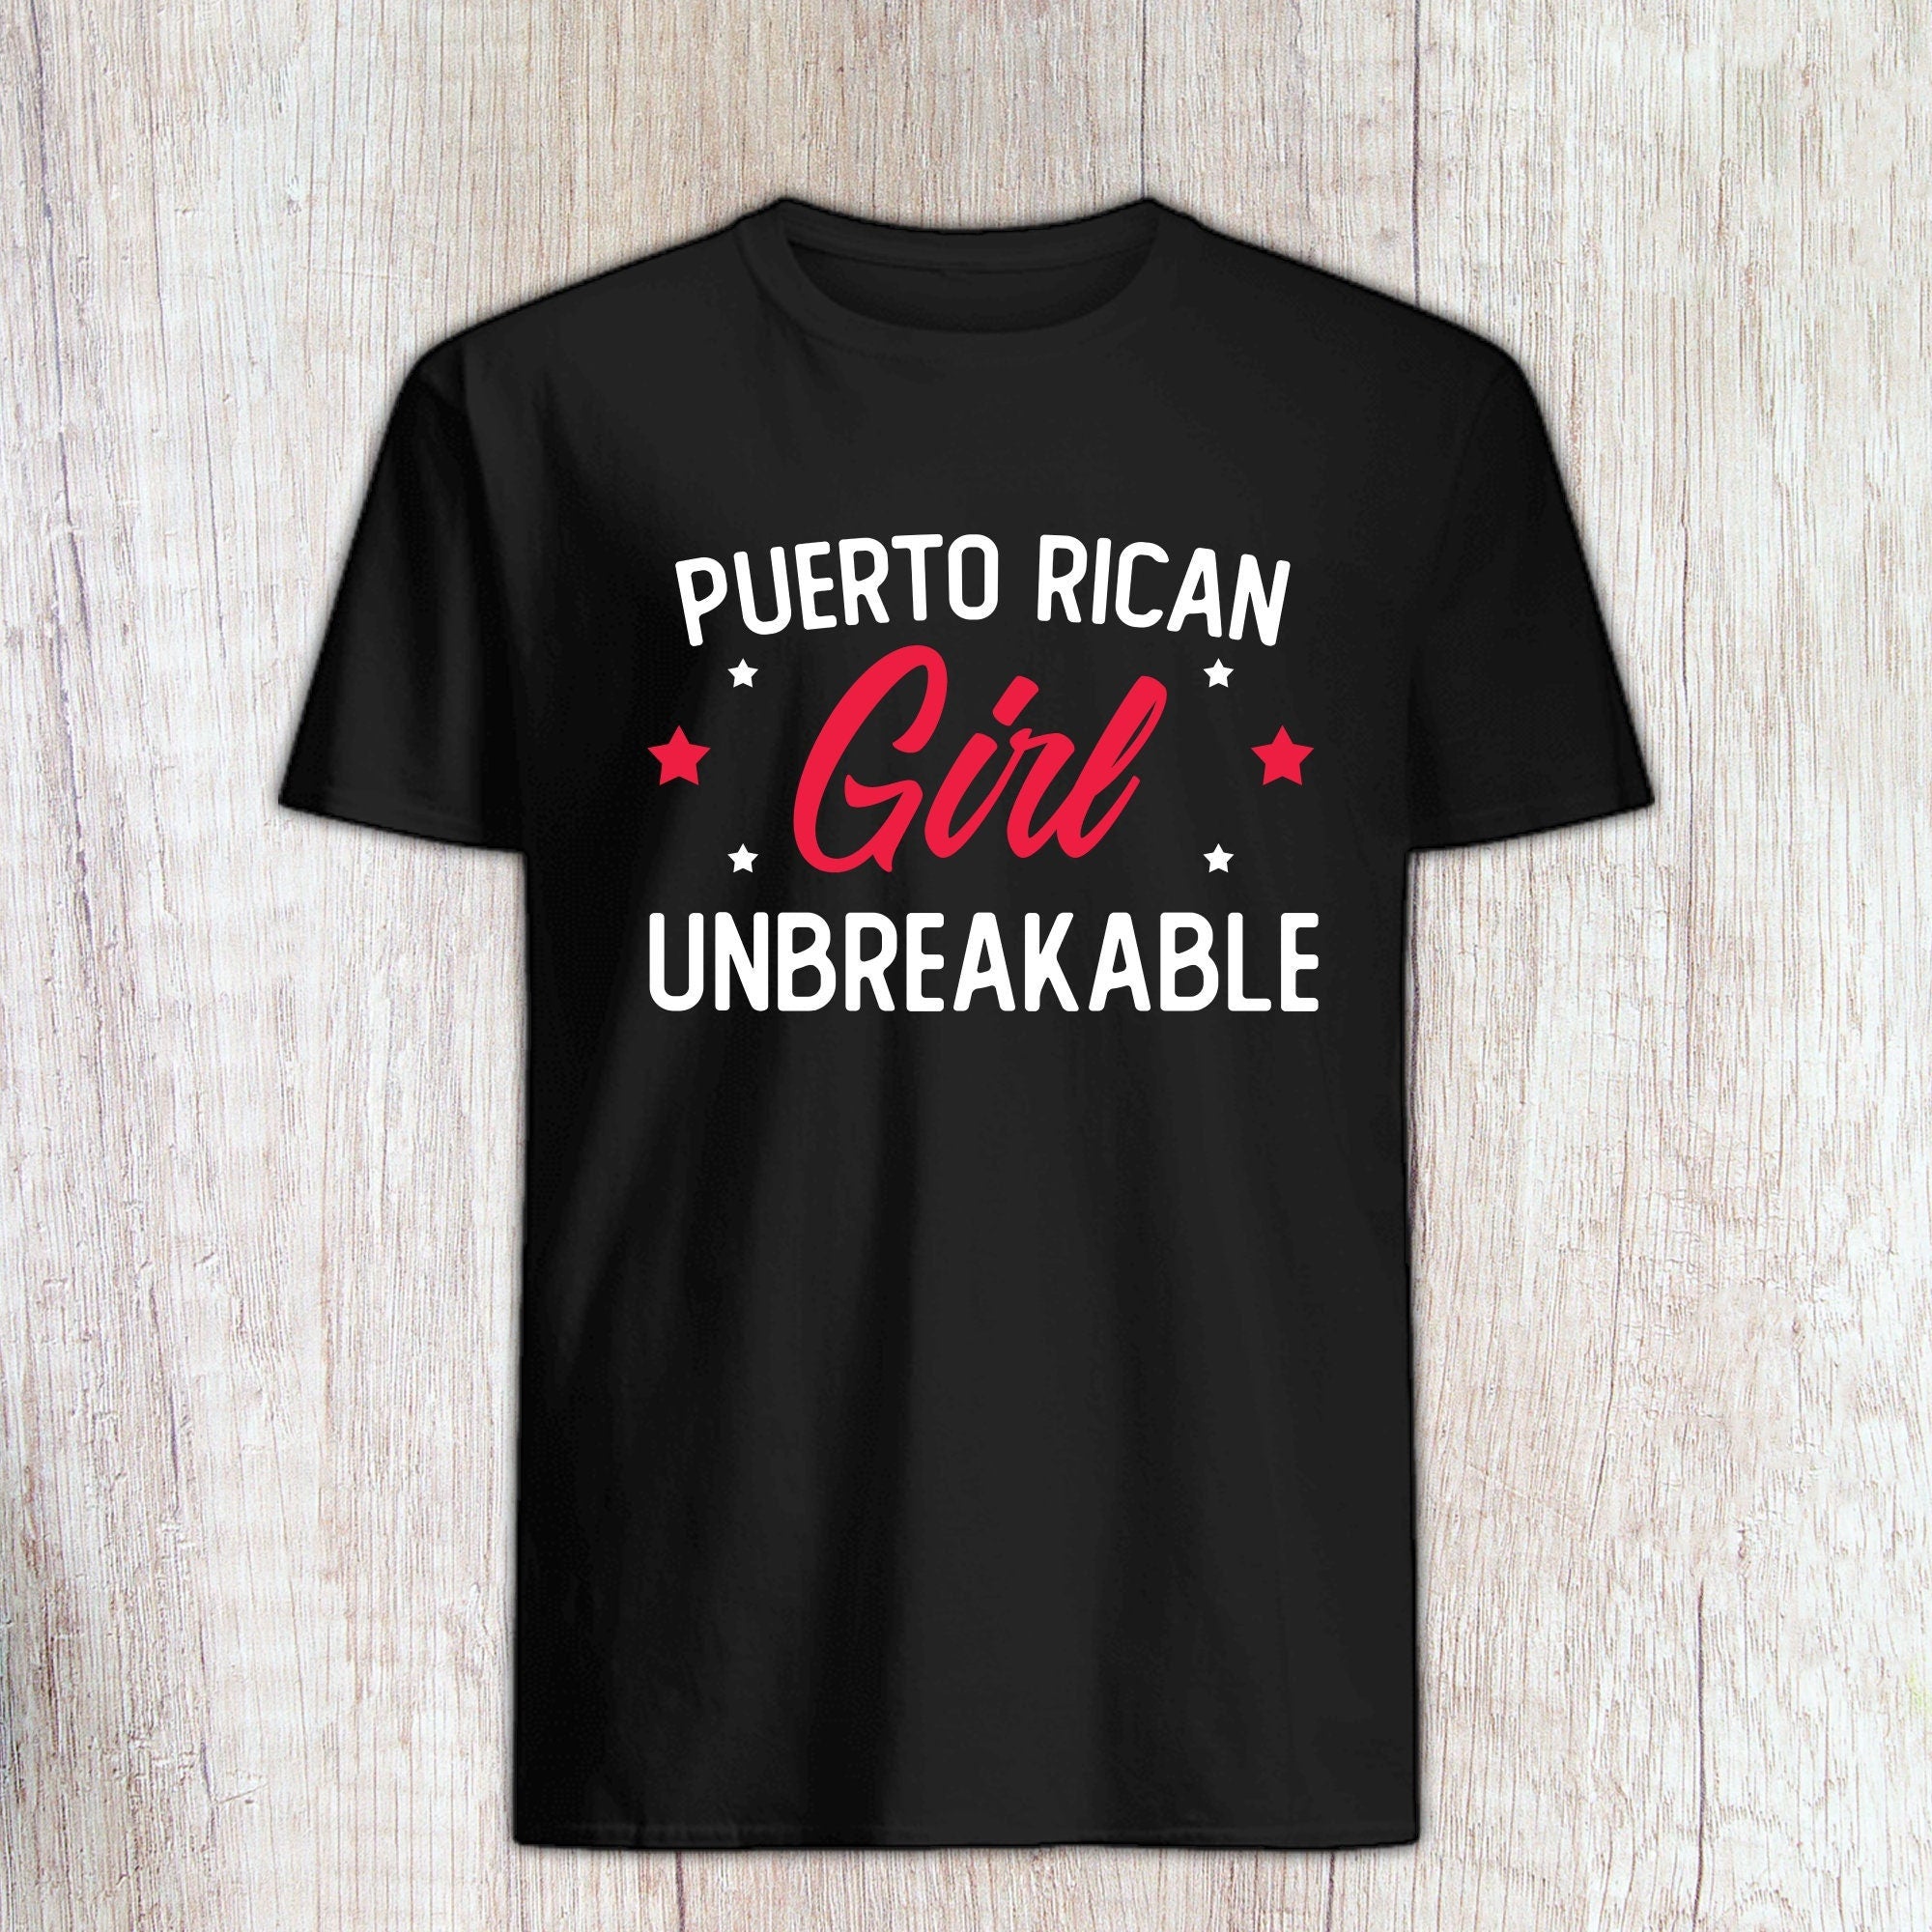 Puerto Rican Girl Unbreakable Shirt - Puerto Rican Girl Feminist T shirt - Strong Puerto Rican Girl